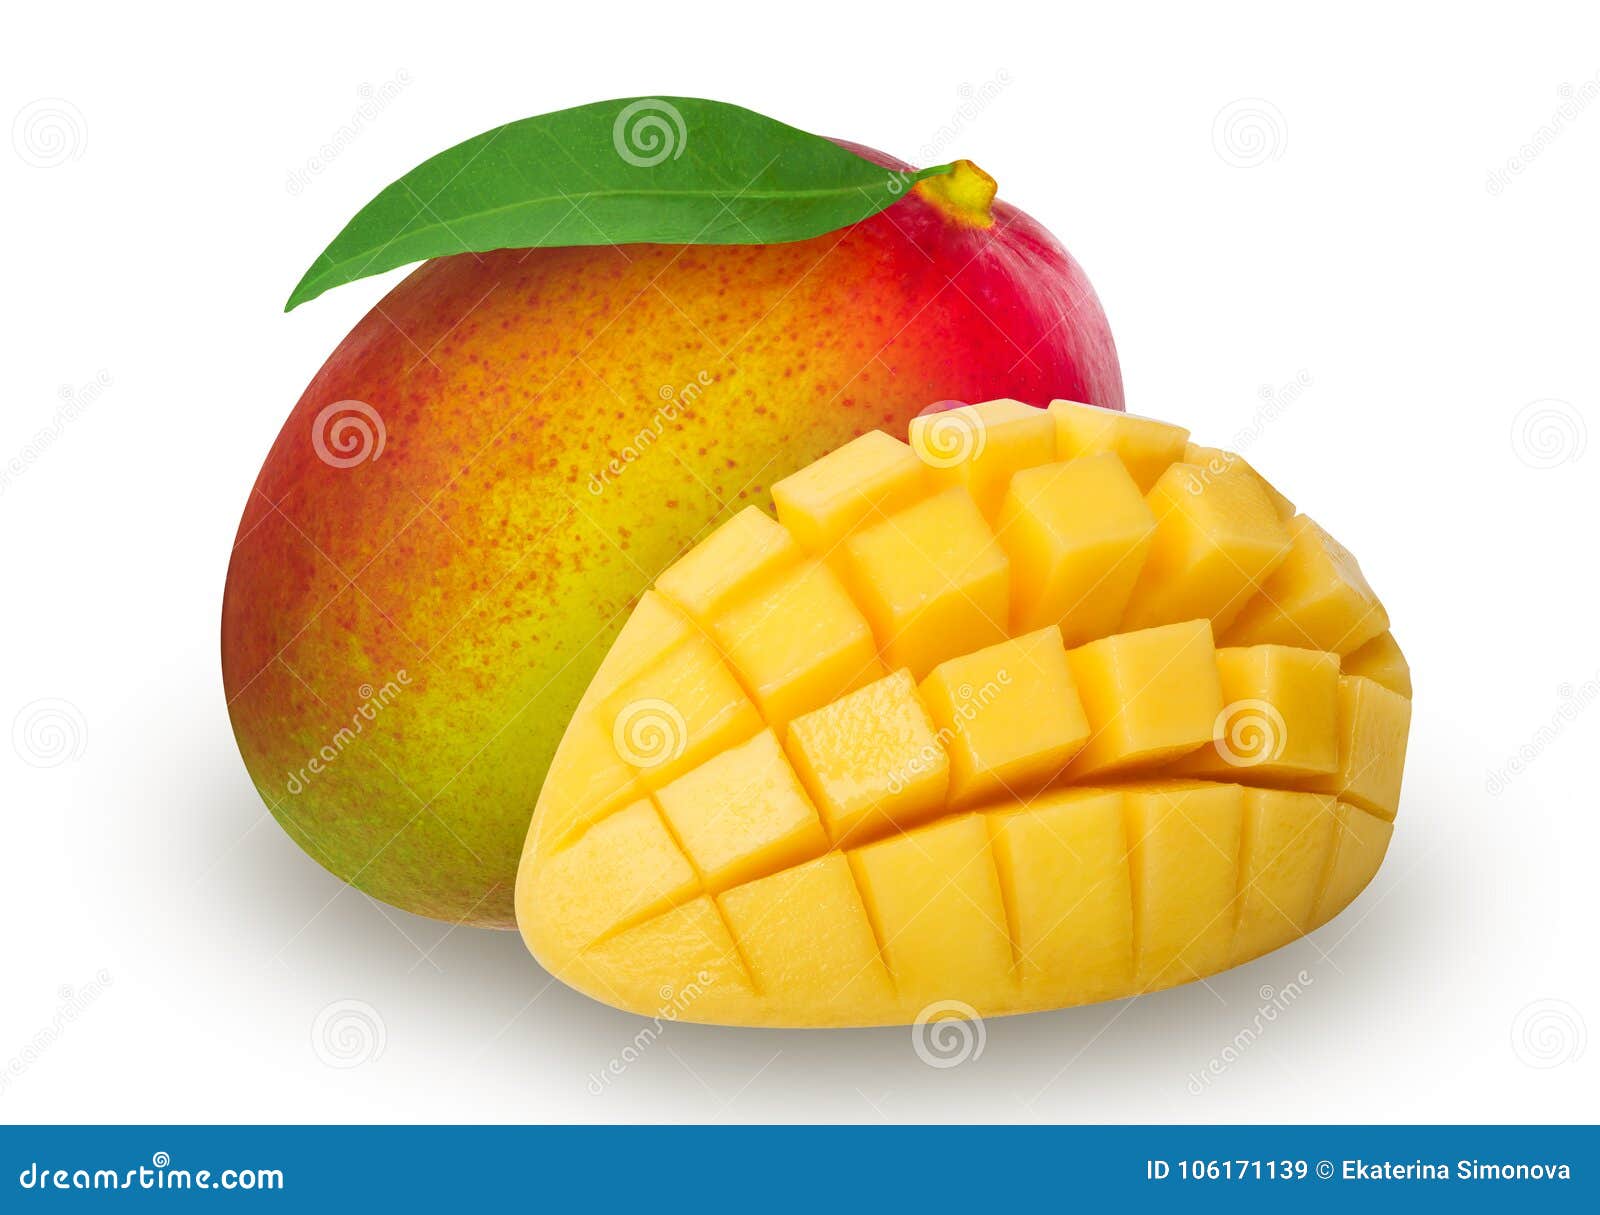 mango isolated stock image. Image of ripe, path - 106171139